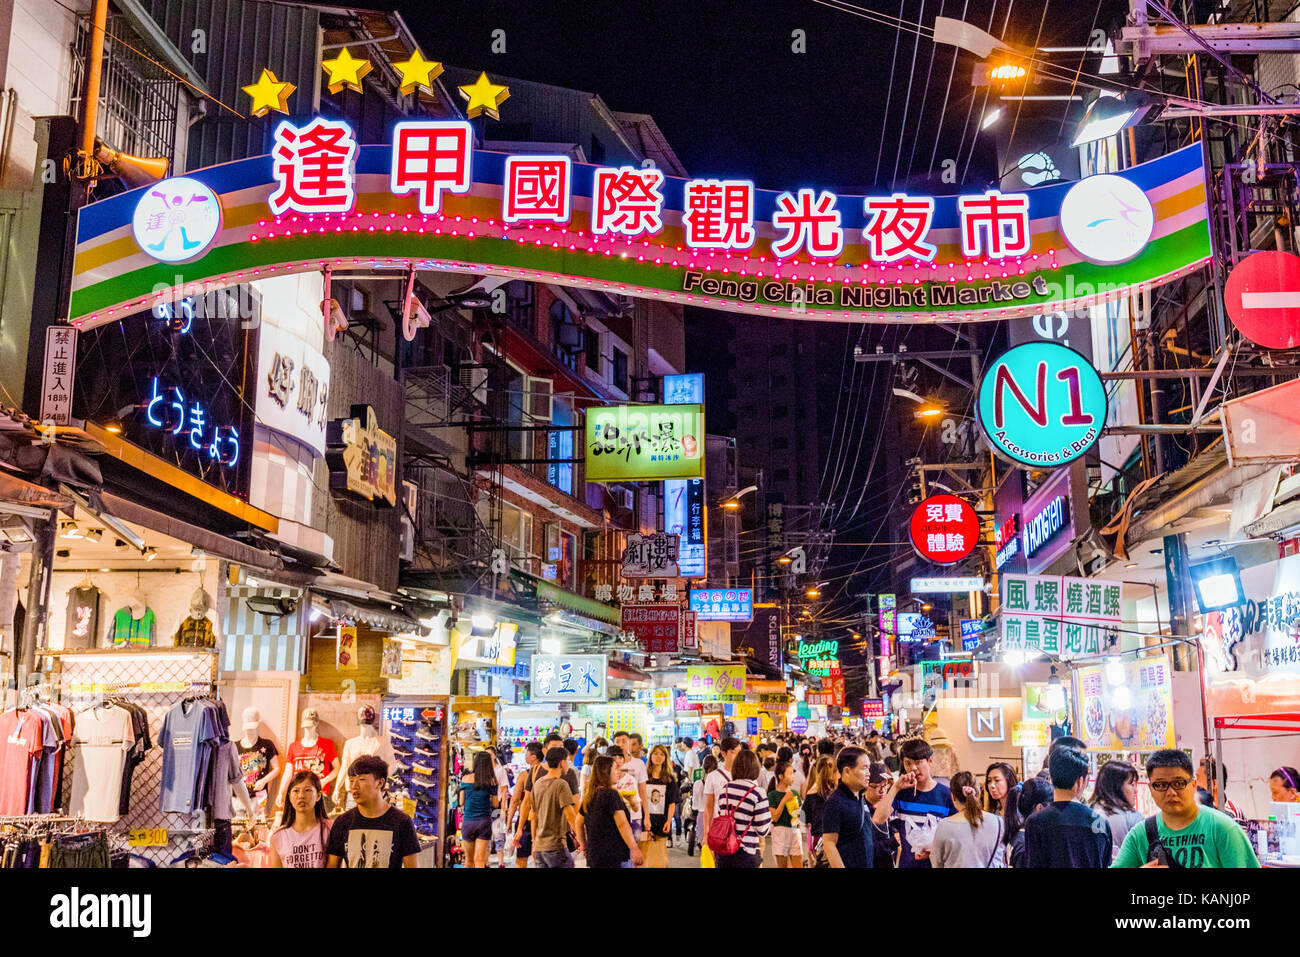 Taichung, Taiwan - 18 luglio: questo è l'ingresso principale di fengjia notte di mercato il più grande mercato notturno di Taiwan che è frequentata da escursionisti e loc Foto Stock